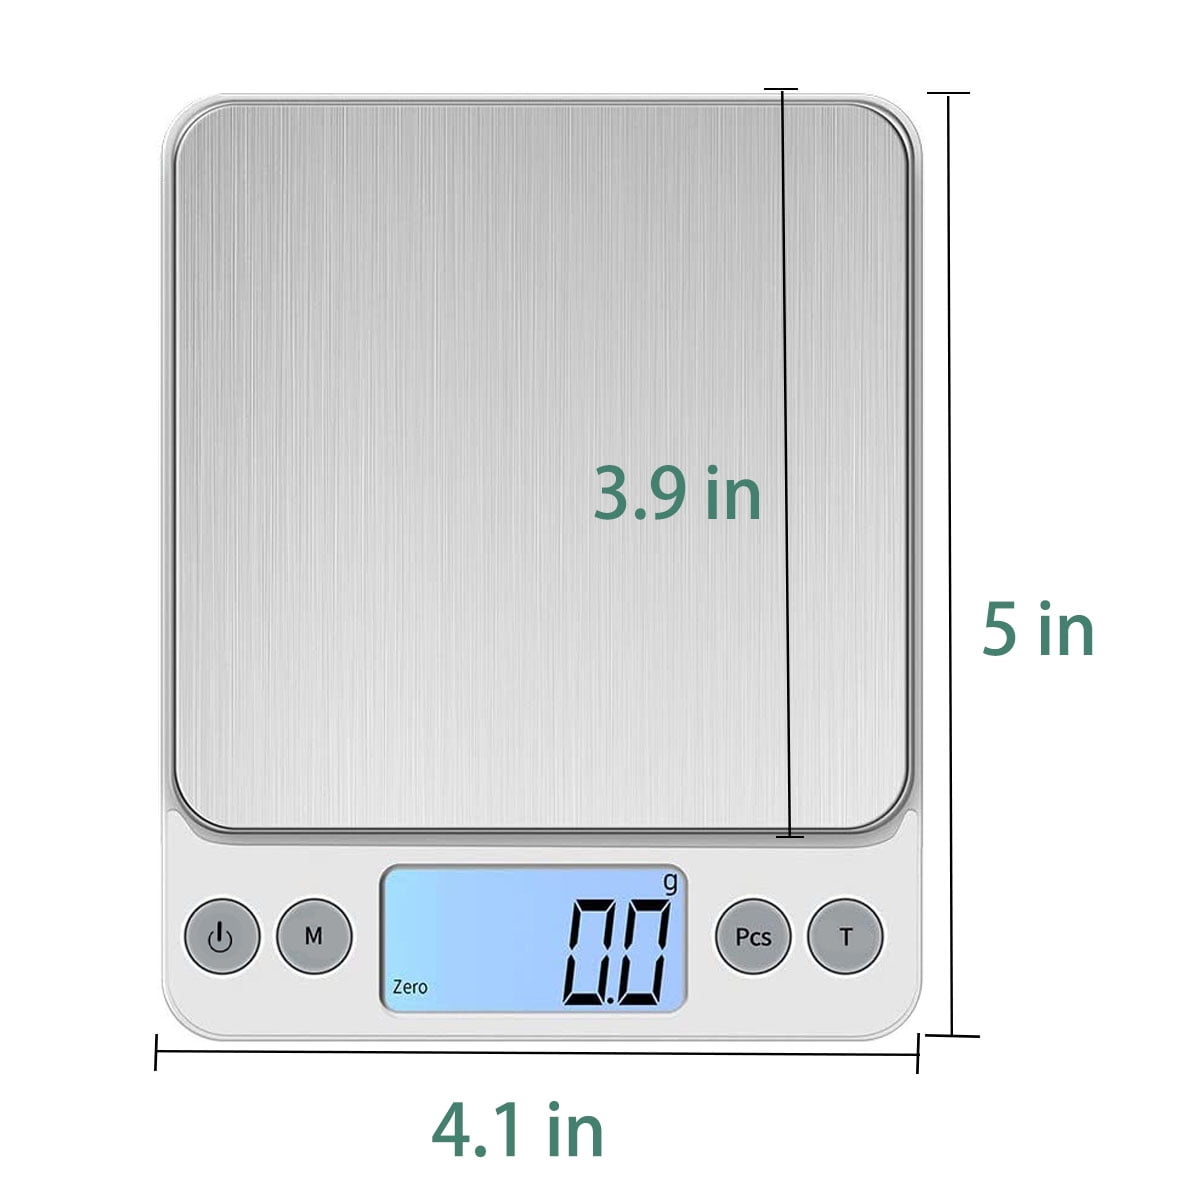 Digital Gram Scale - 3000 Gram Capacity